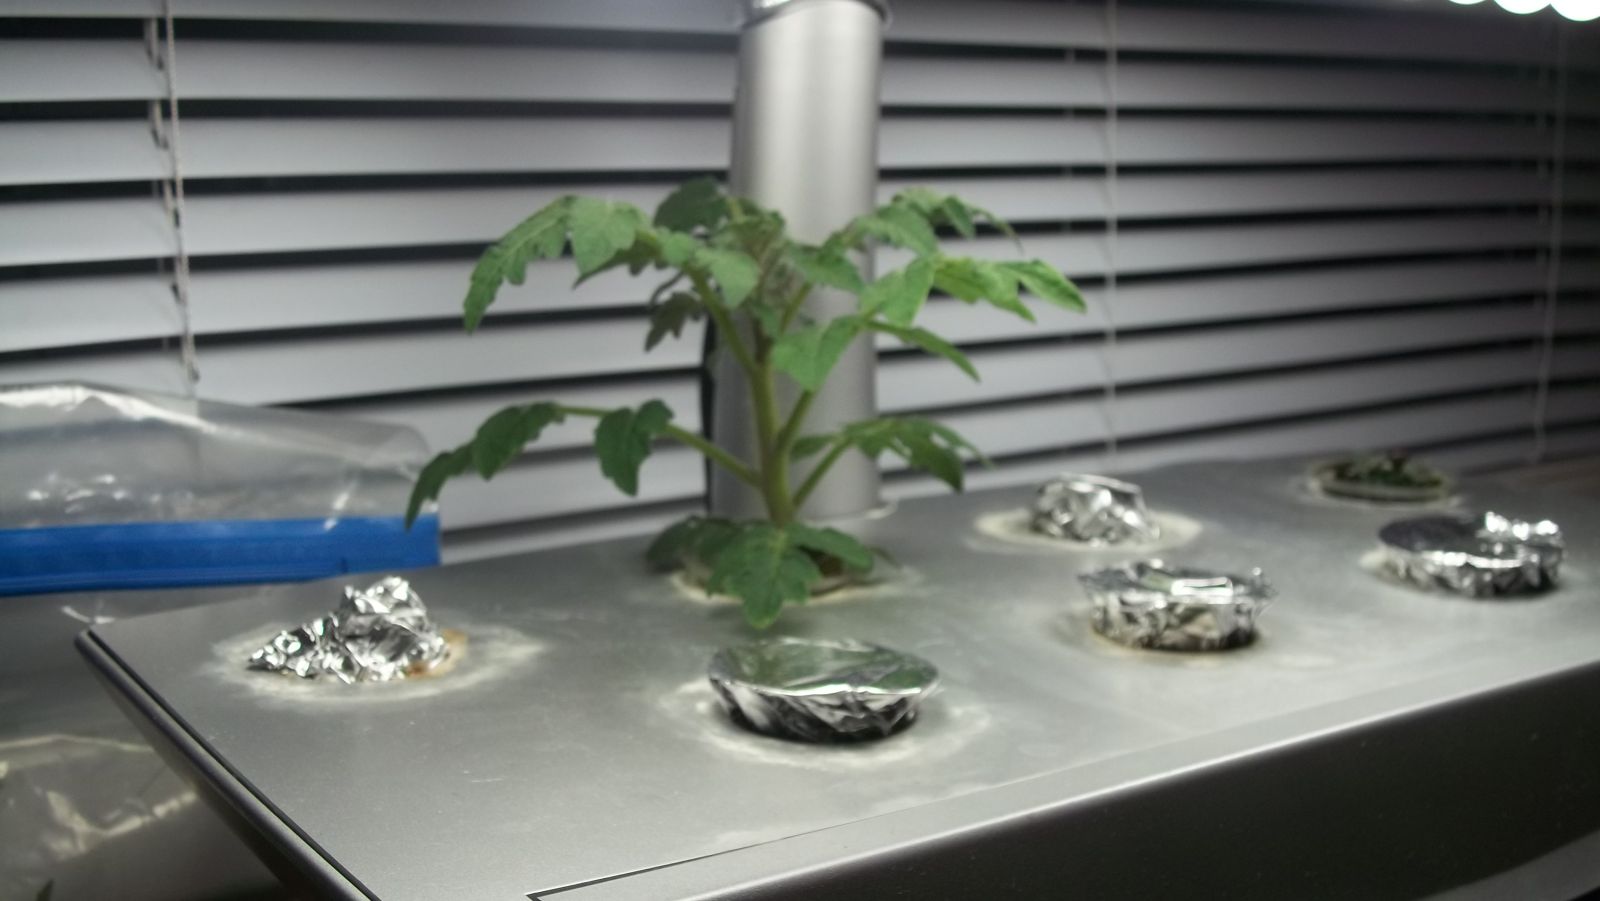 Aerogarden tomato plant